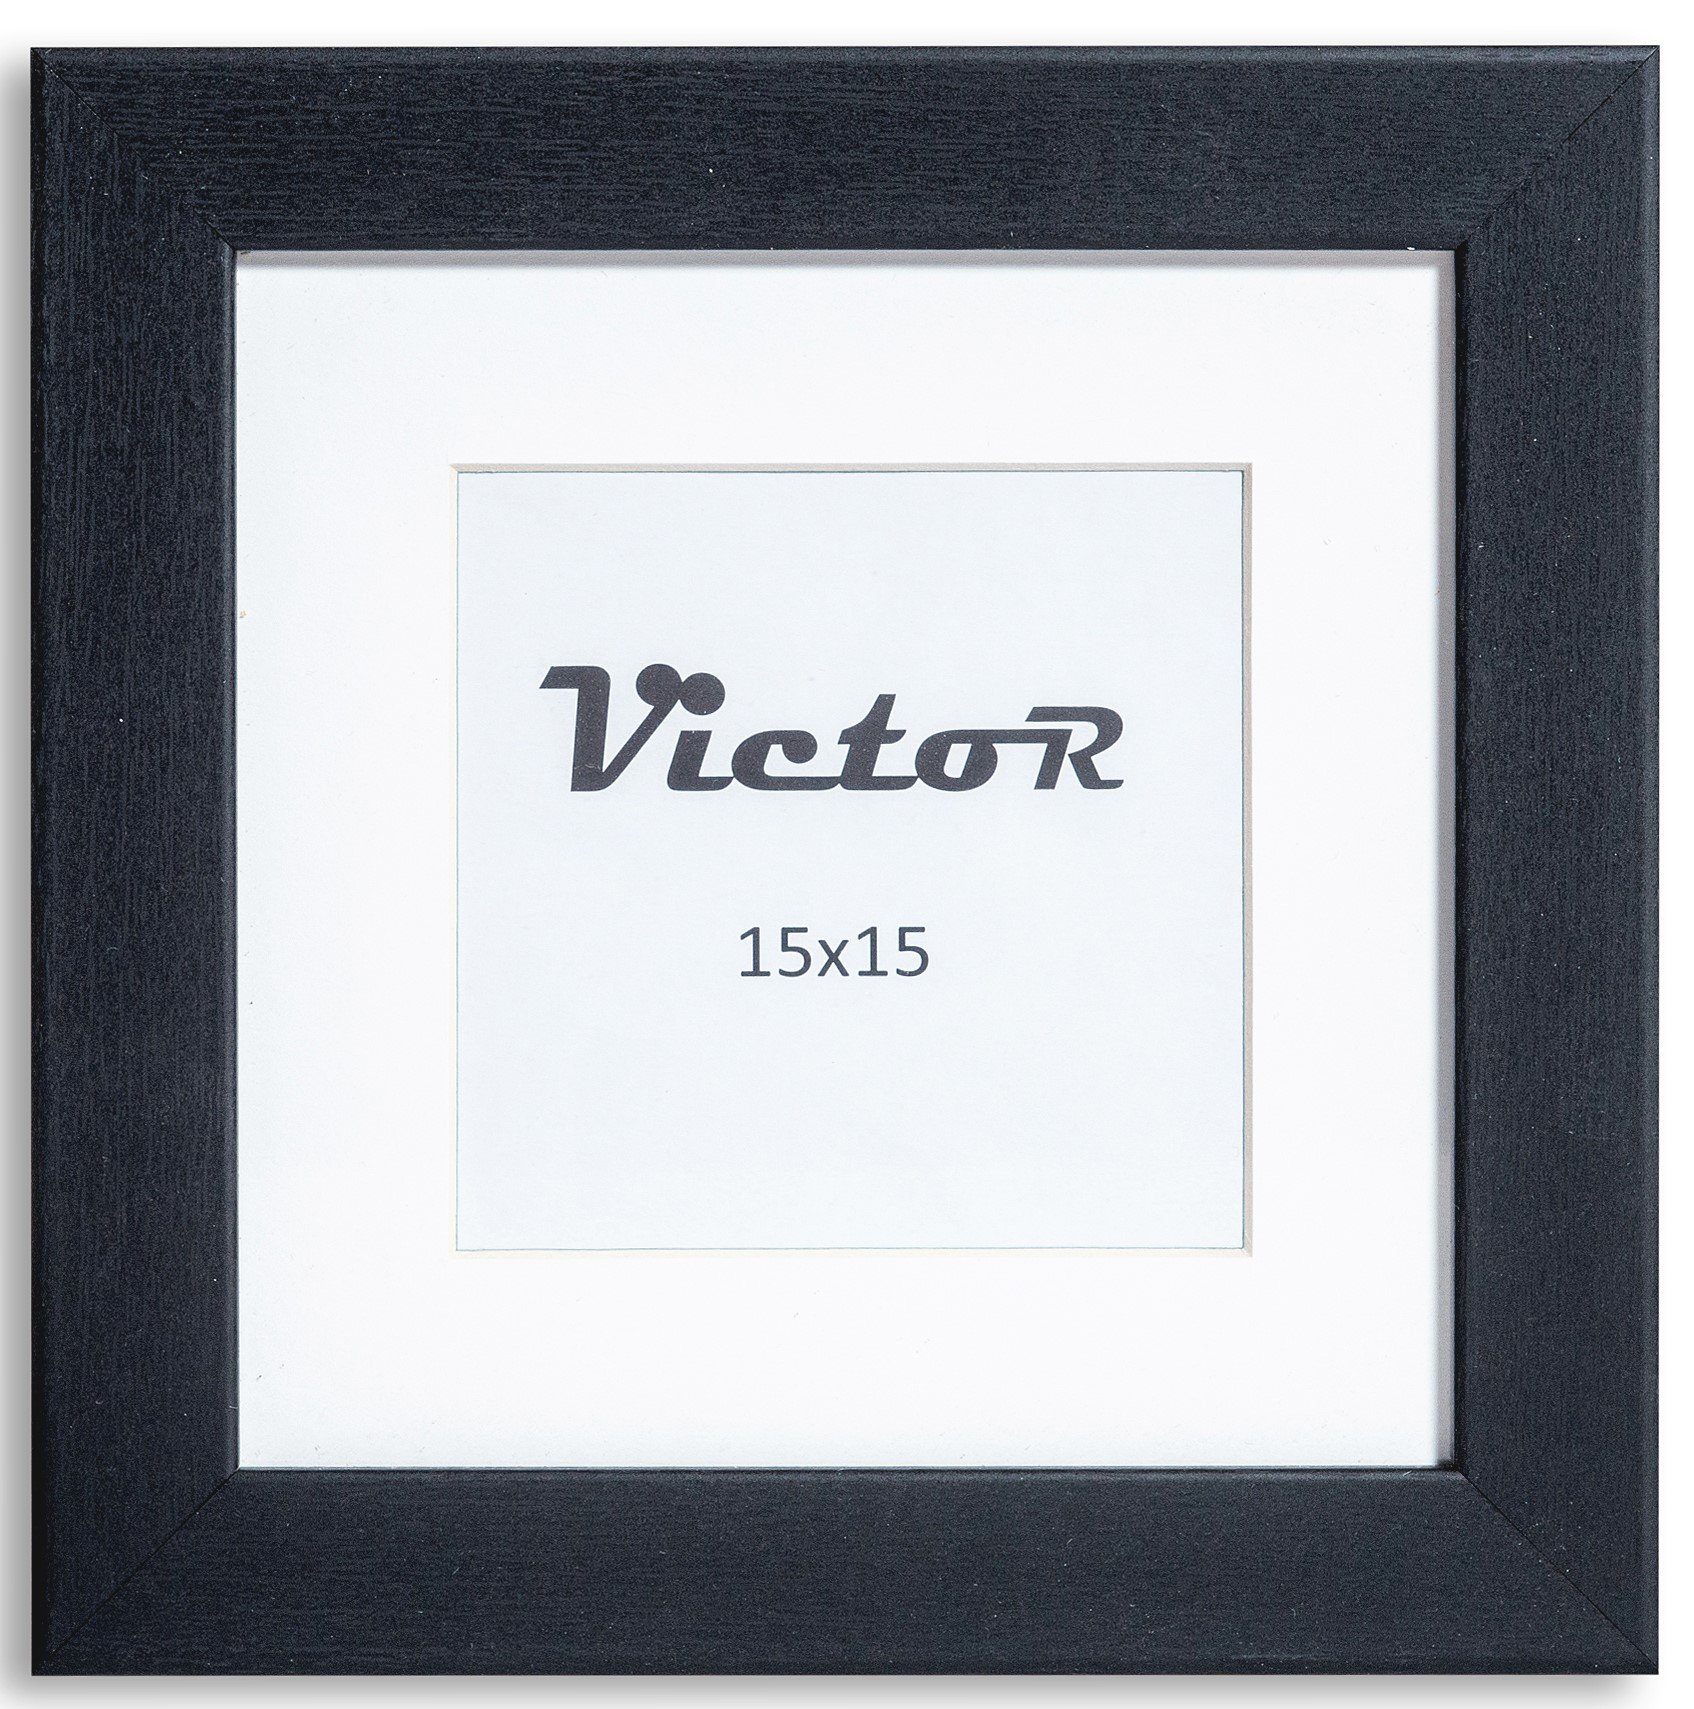 Victor (Zenith) Bilderrahmen Bilderrahmen \"Richter\" - Farbe: Schwarz - Größe: 15 x 15 cm, Bilderrahmen Schwarz 15x15 cm mit 10x10 cm Passepartout, Holz